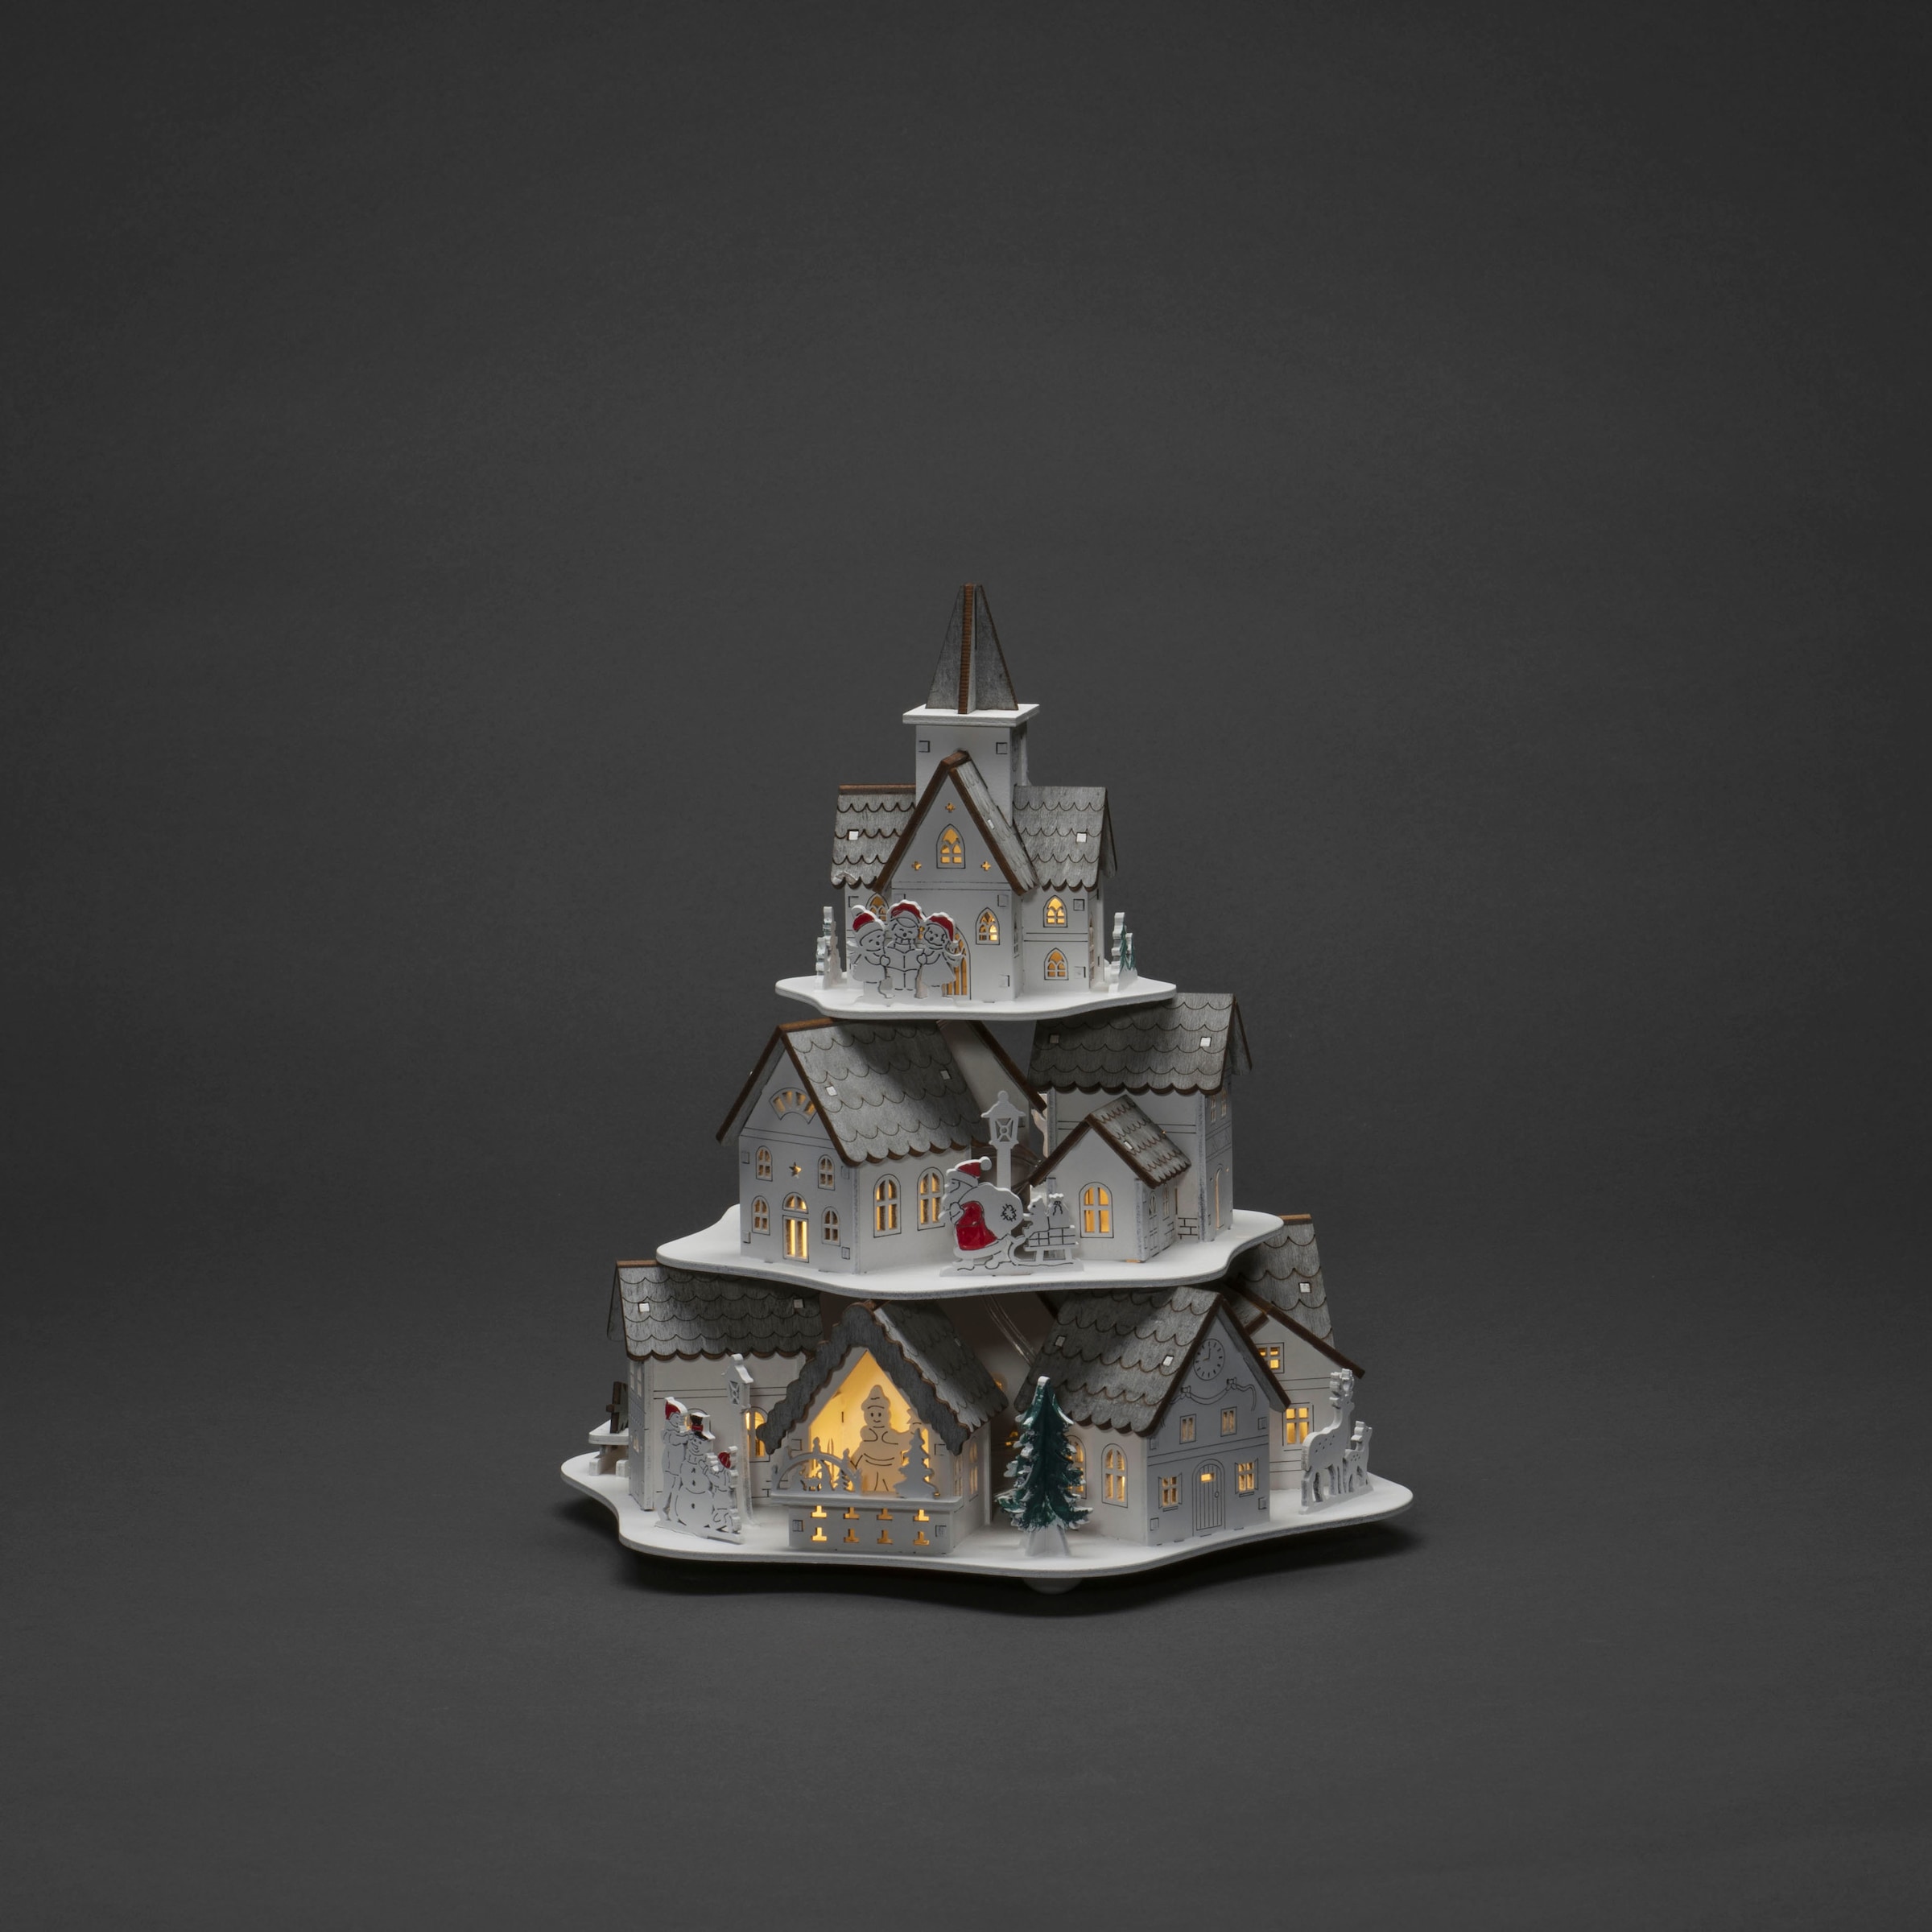 KONSTSMIDE Weihnachtshaus »LED Holzsilhouette Häuser, weiß, 10 warm weiße Dioden«, wählbare Energieversorgung zwischen USB oder Batteriebetrieb, 6h Timer